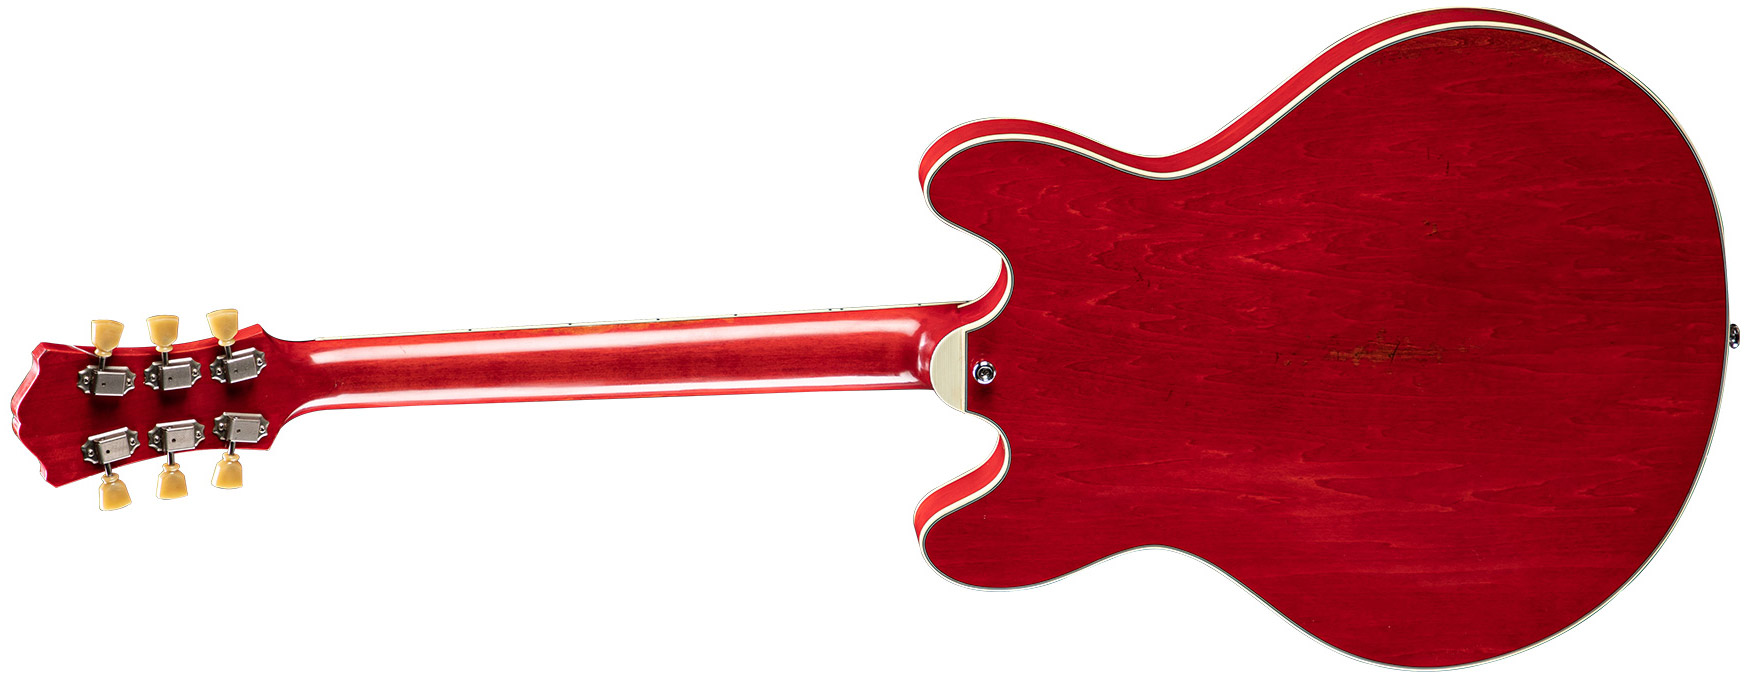 Eastman T64/v Thinline Laminate Tout Erable 2p90 Lollar Ht Eb - Antique Red - Guitare Électrique 1/2 Caisse - Variation 1